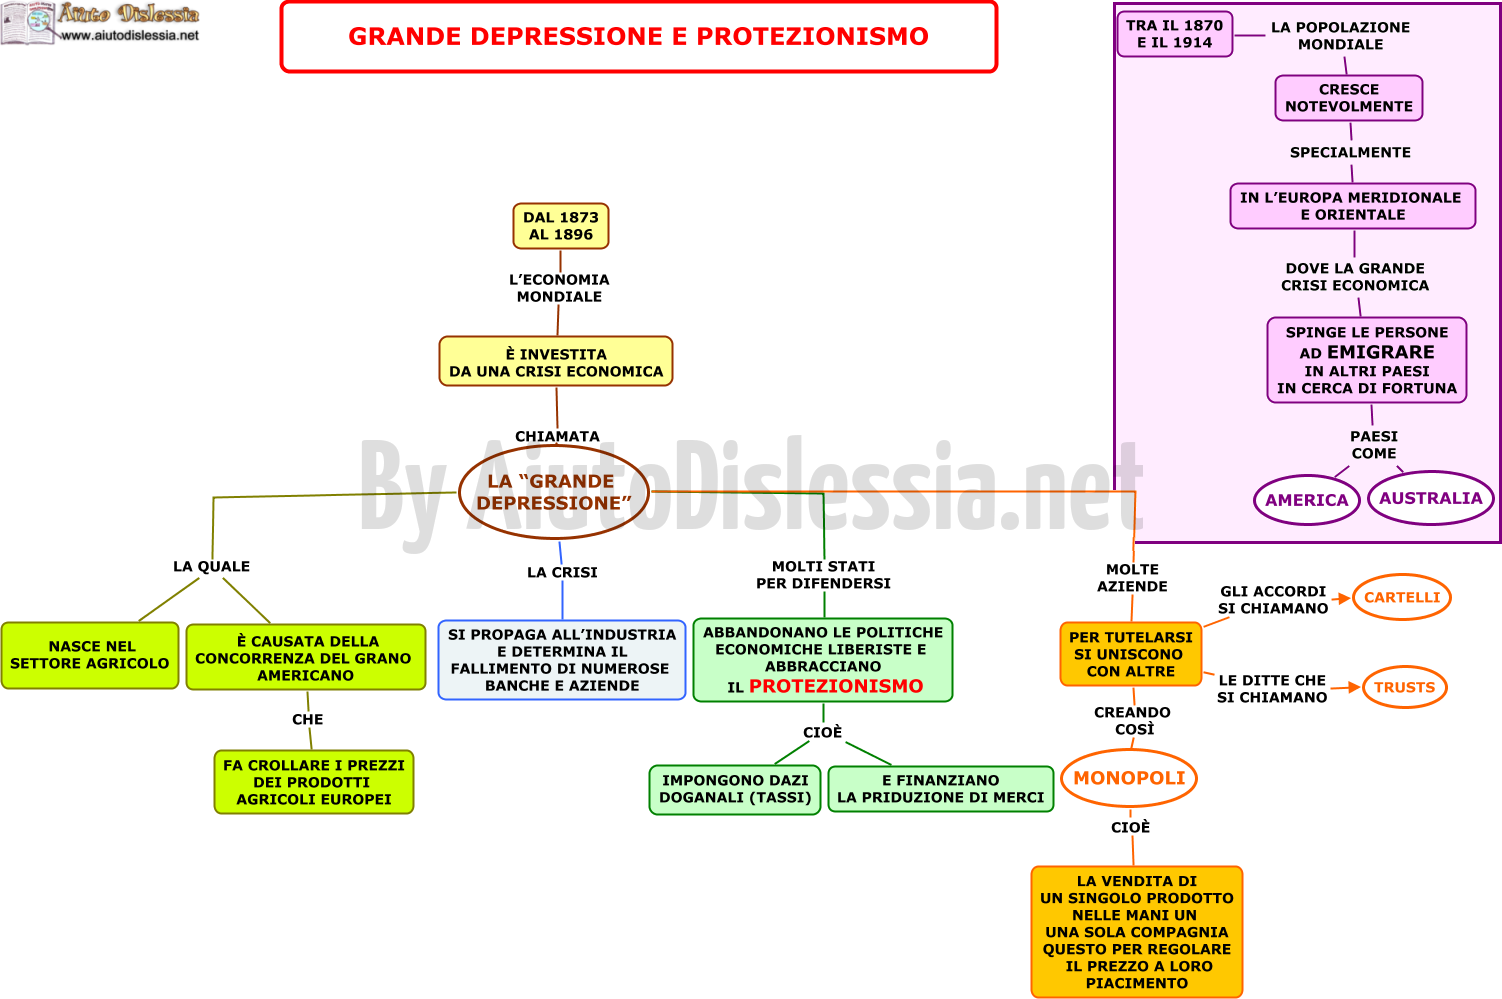 02.-GRANDE-DEPRESSIONE-E-PROTEZIONISMO